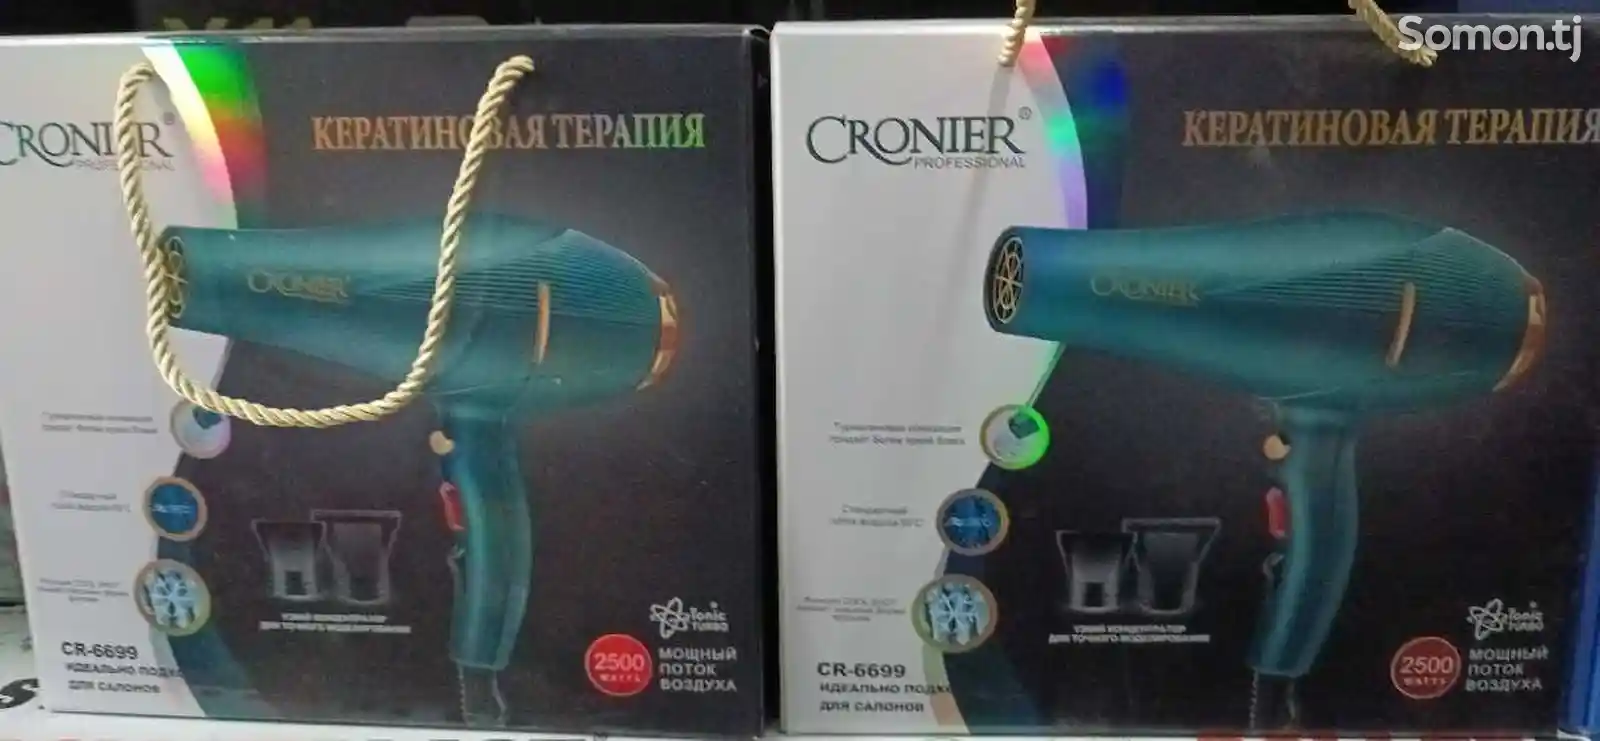 Фен Cronier CR-6699-2